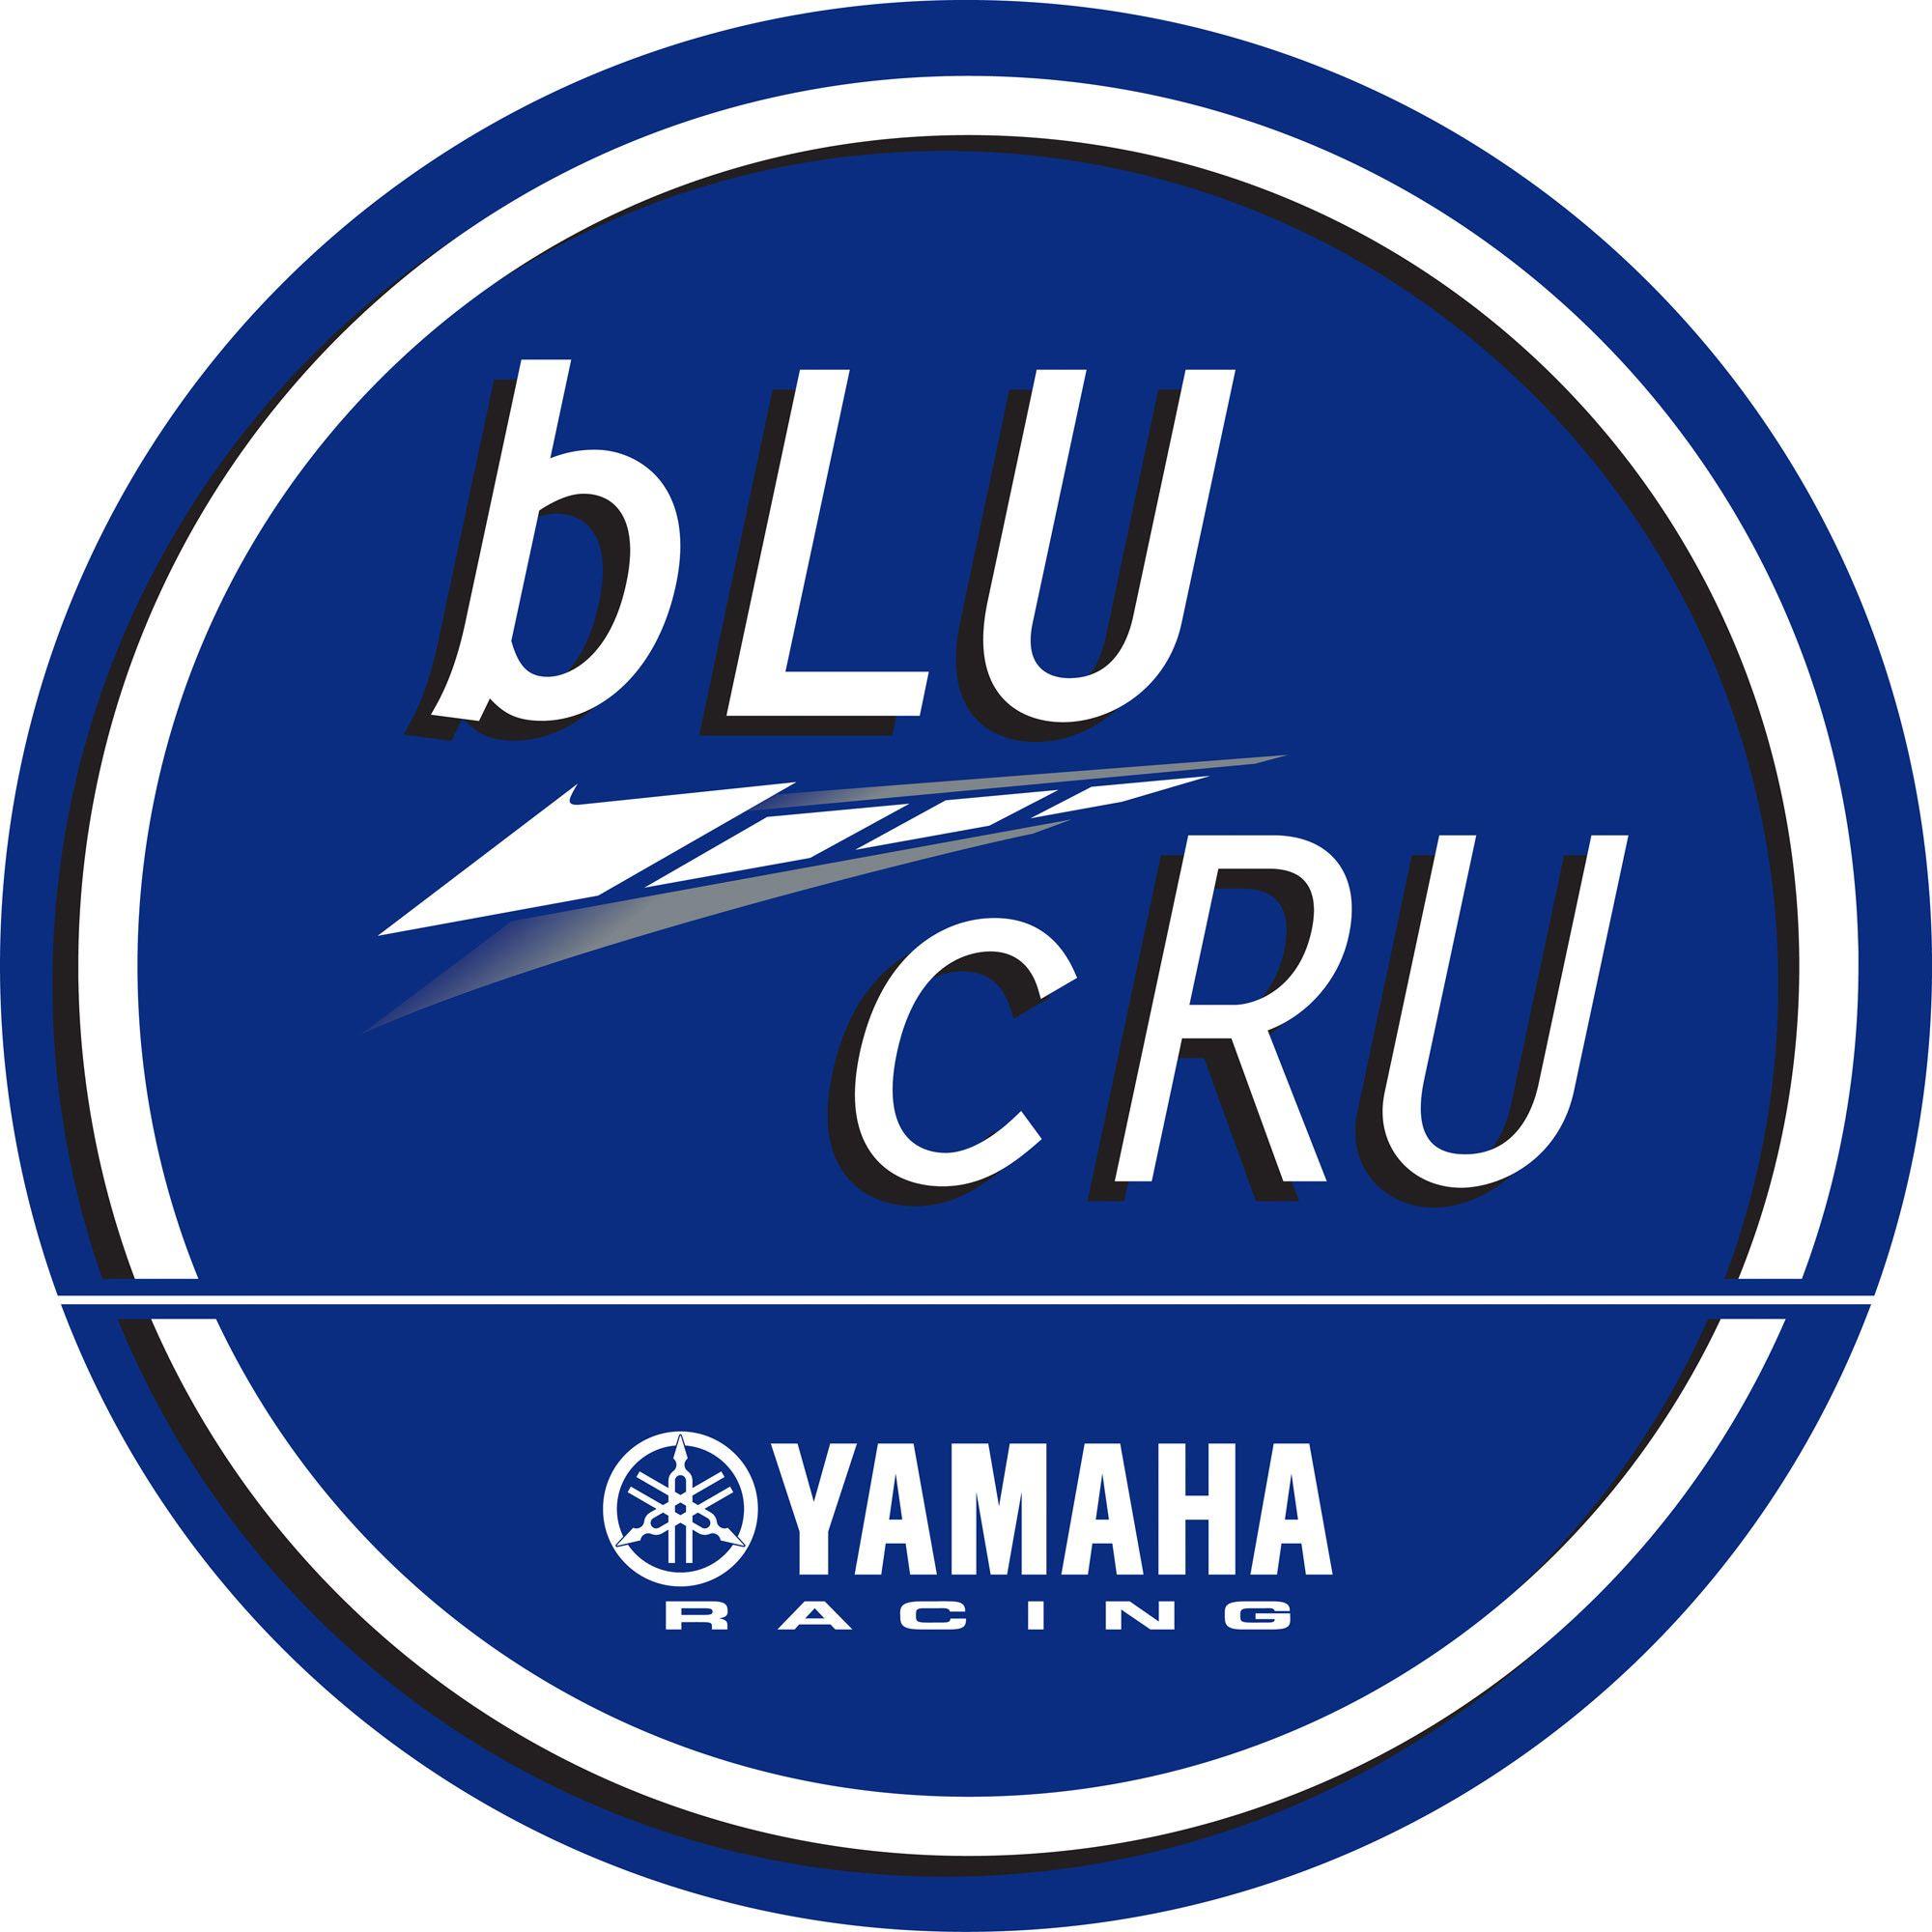 Yamaha Racing Logo Wallpapers Top Free Yamaha Racing Logo Backgrounds